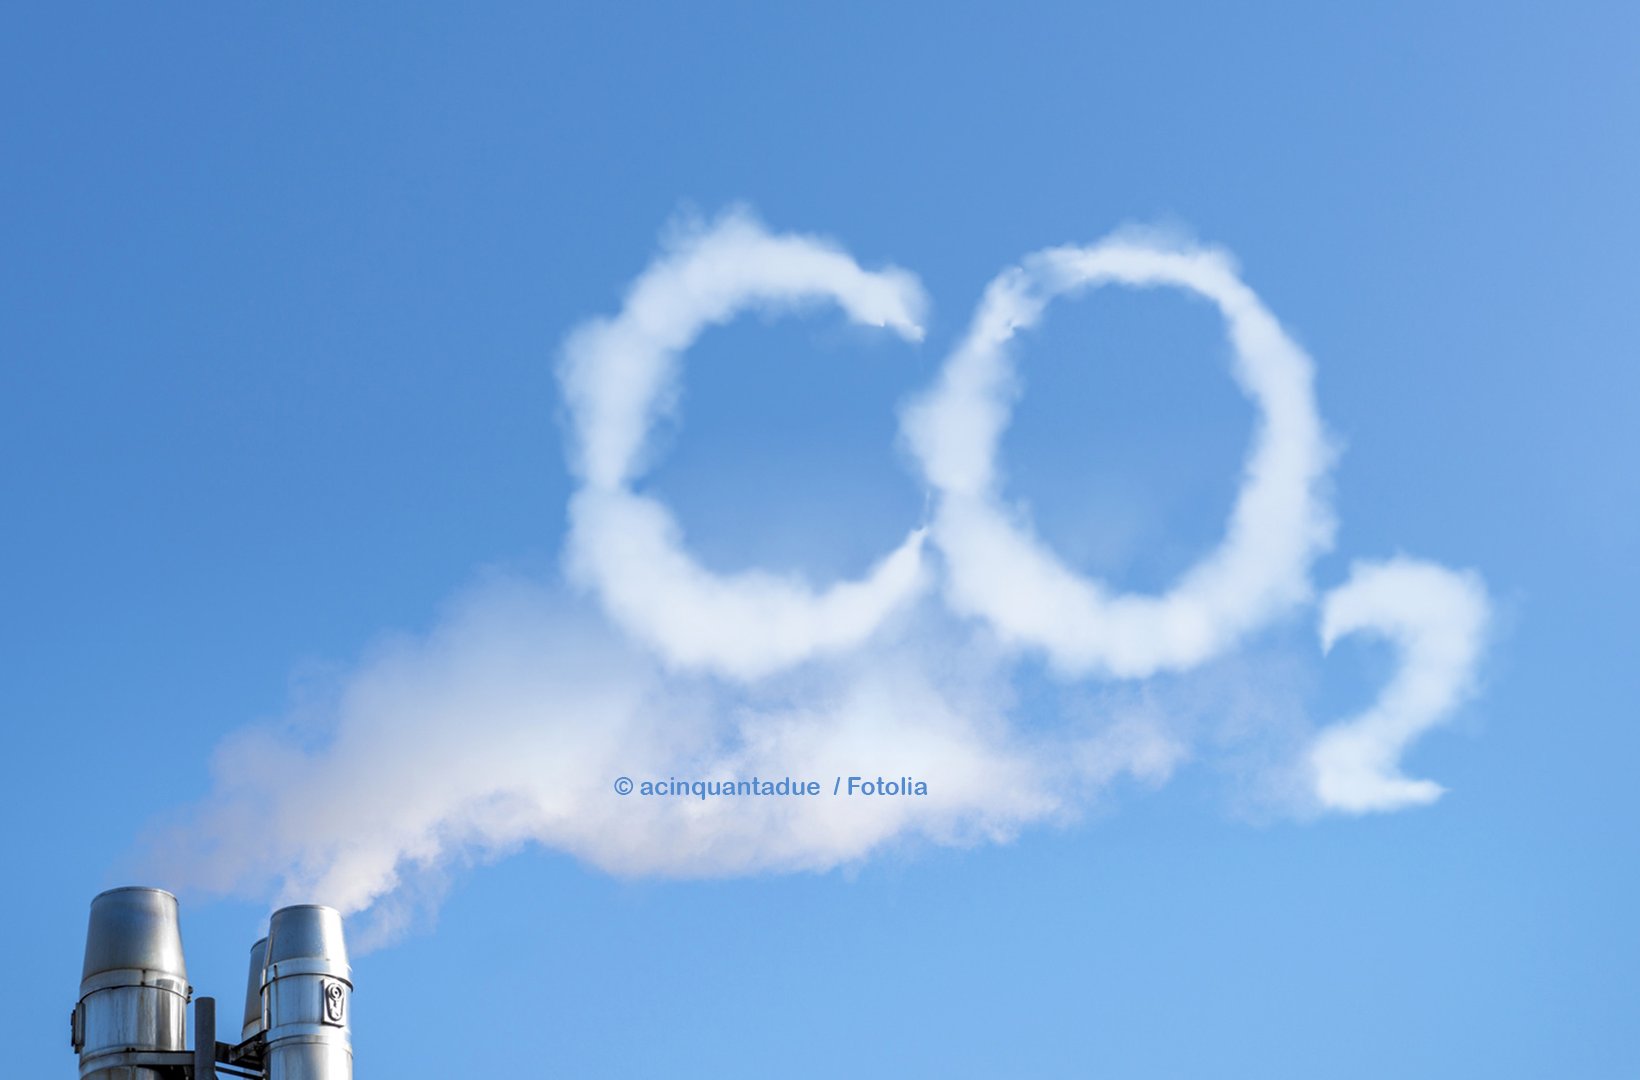 Buchstaben CO2 mit Wolken gestaltet